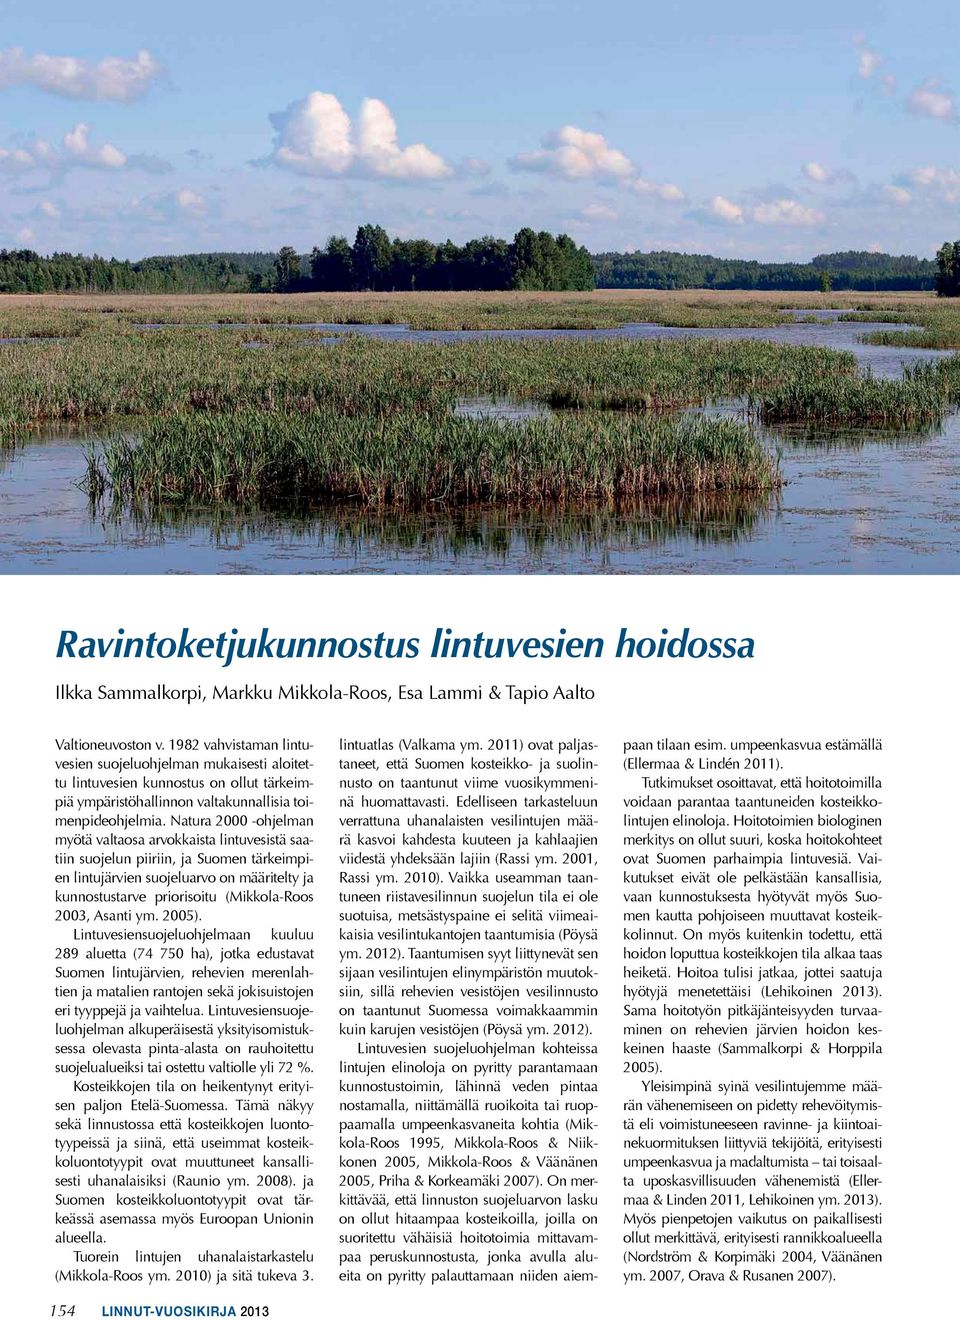 Natura 2000 ohjelman myötä valtaosa arvokkaista lintuvesistä saatiin suojelun piiriin, ja Suomen tärkeimpien lintujärvien suojeluarvo on määritelty ja kunnostustarve priorisoitu (Mikkola-Roos 2003,